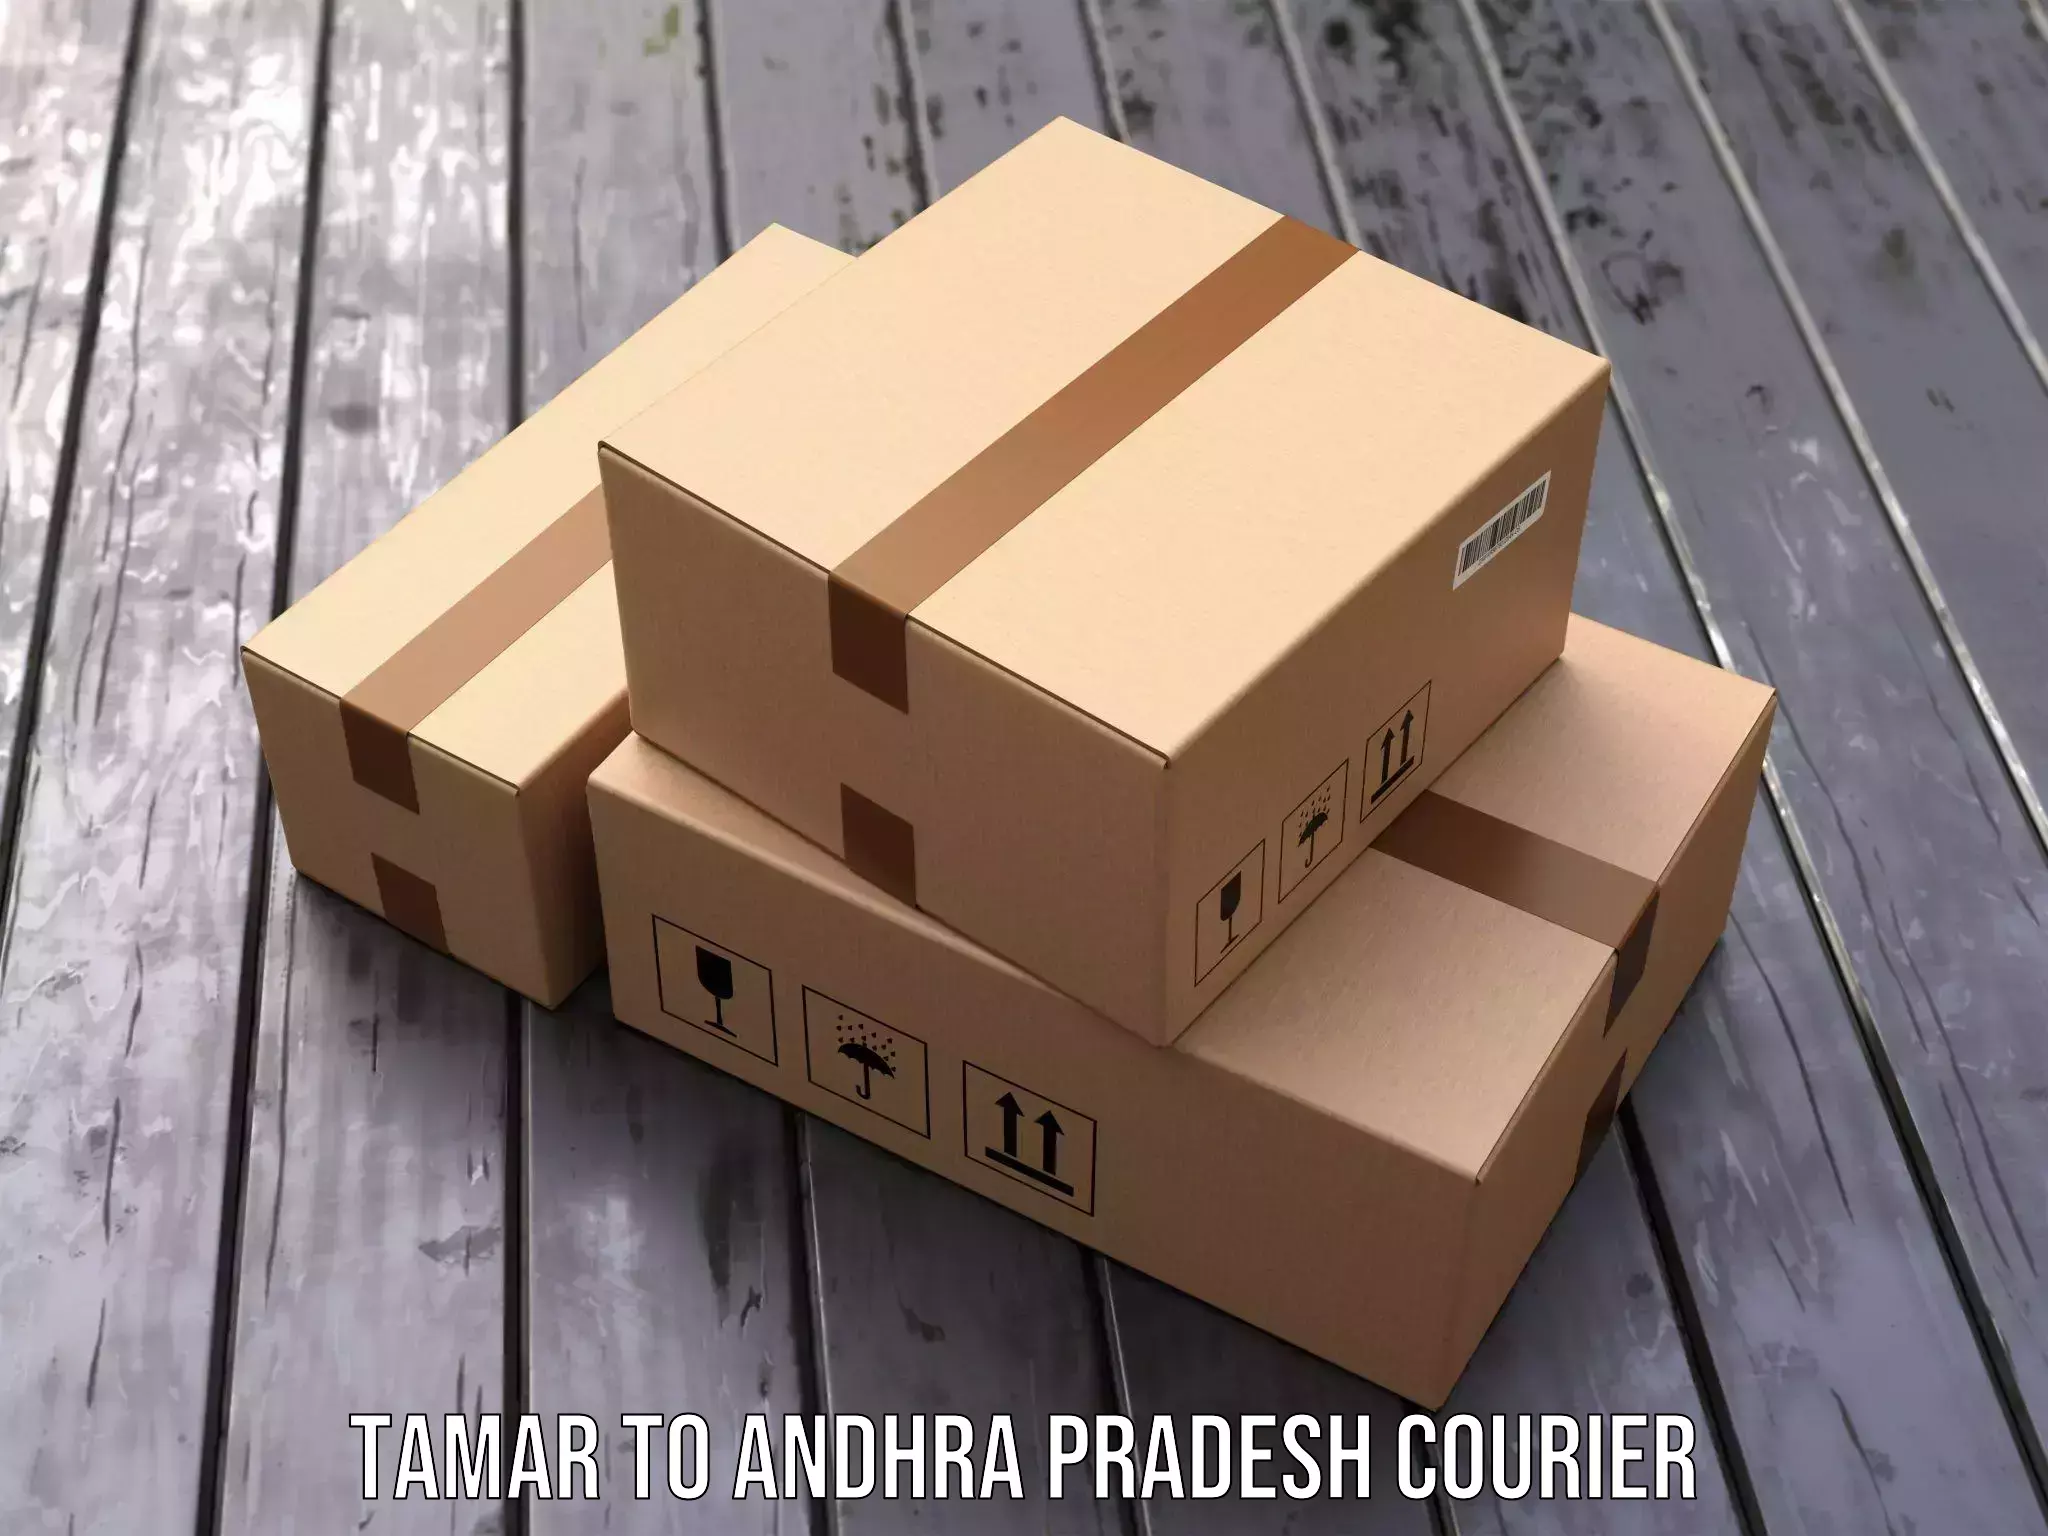 Ground shipping Tamar to Tirupati